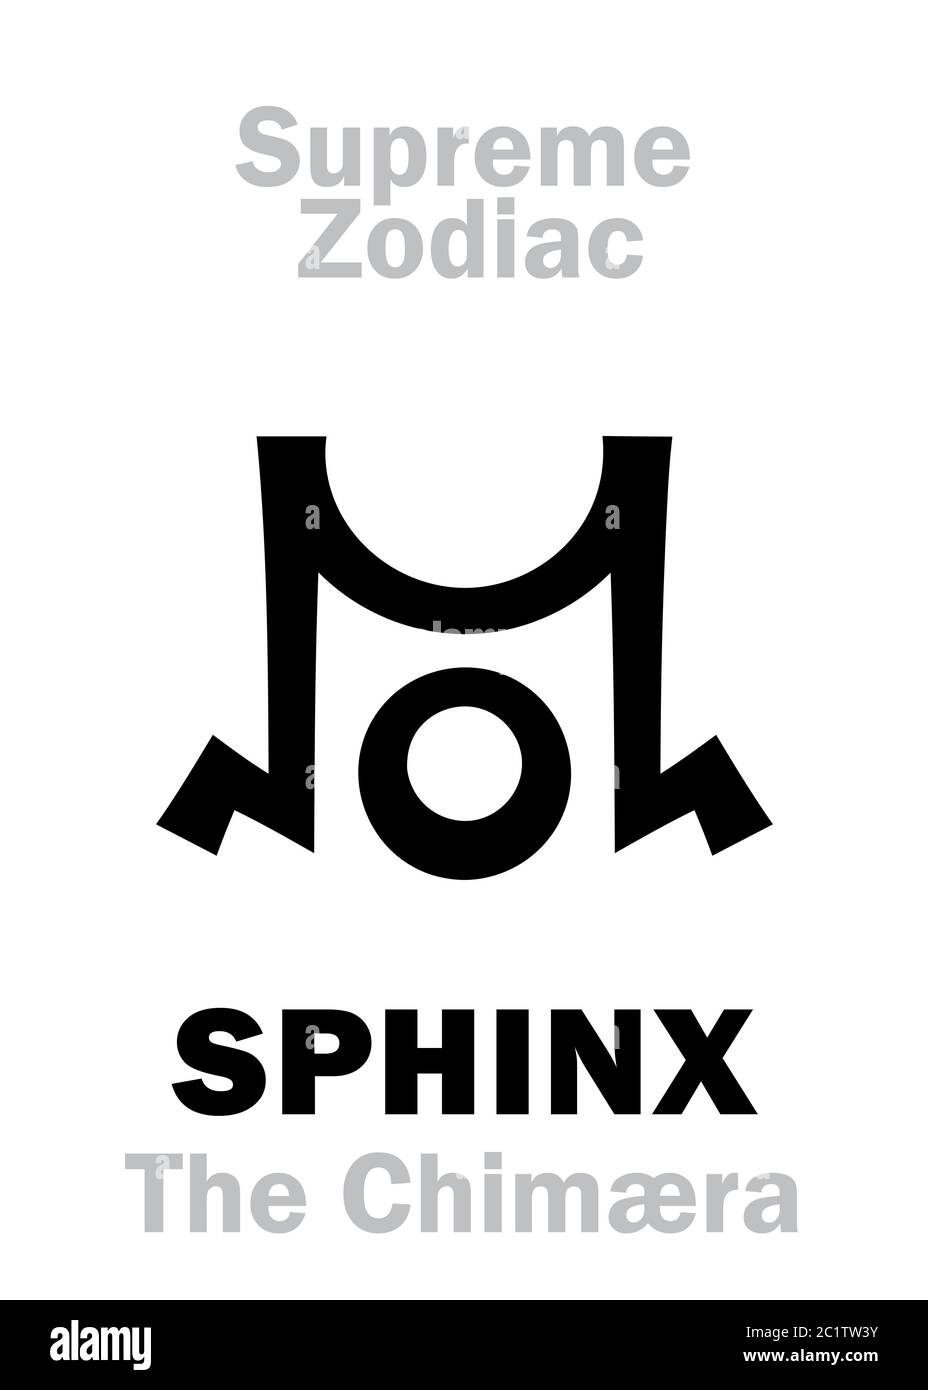 Astrologia: Zodiaco supremo: SPHINX (il Chimæra)  Cignus («la Croce Settentrionale») Foto Stock